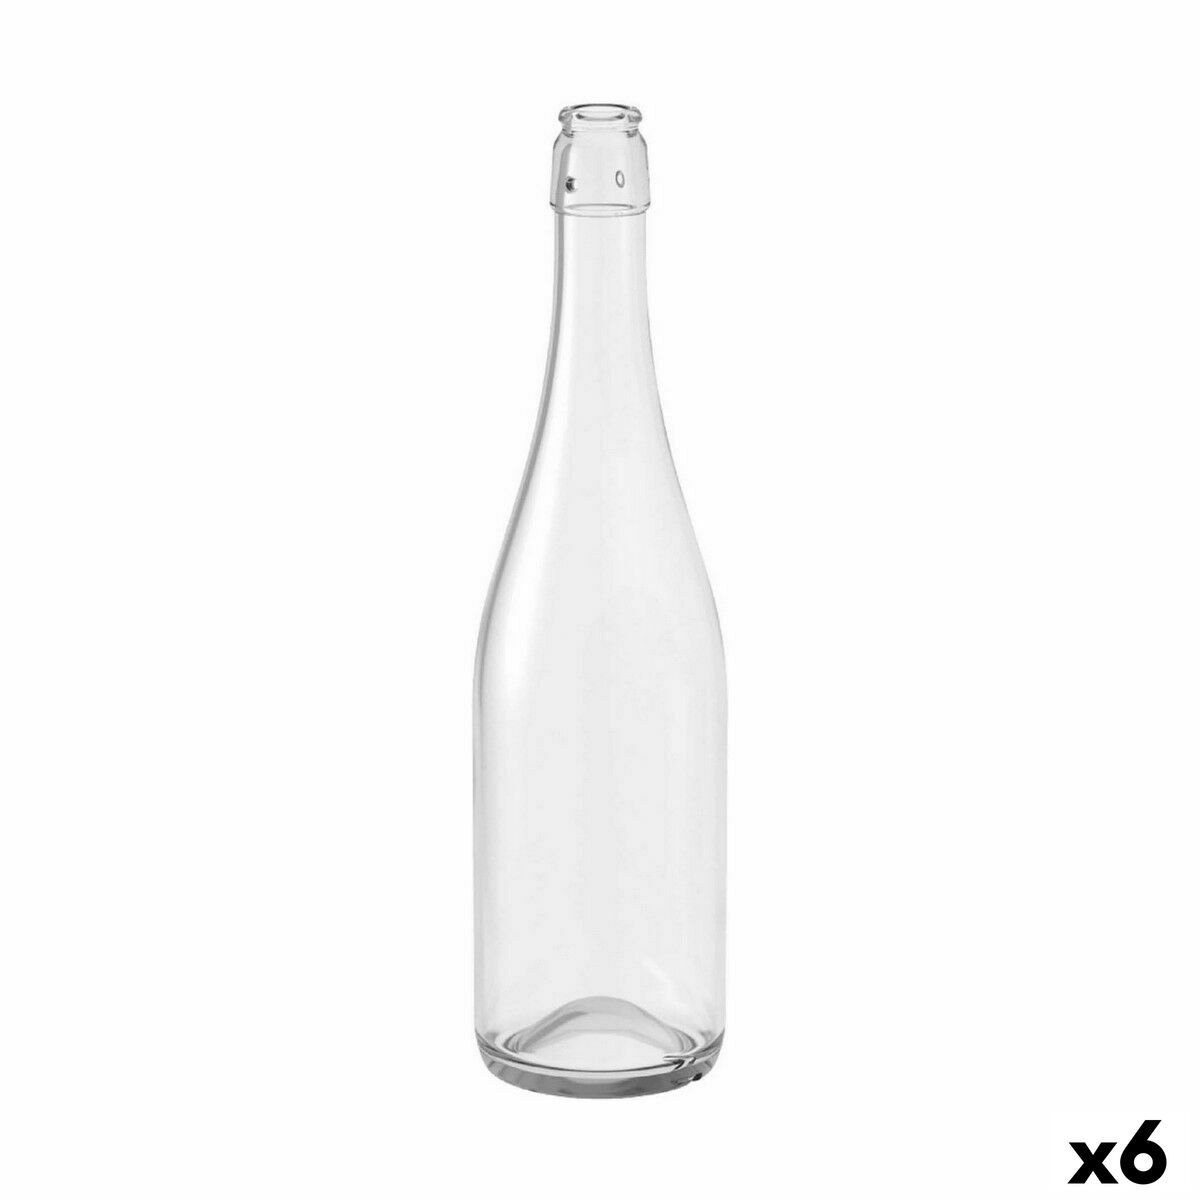 Bottiglia Verallia Mecano 750 ml Vetro (6 Unità)